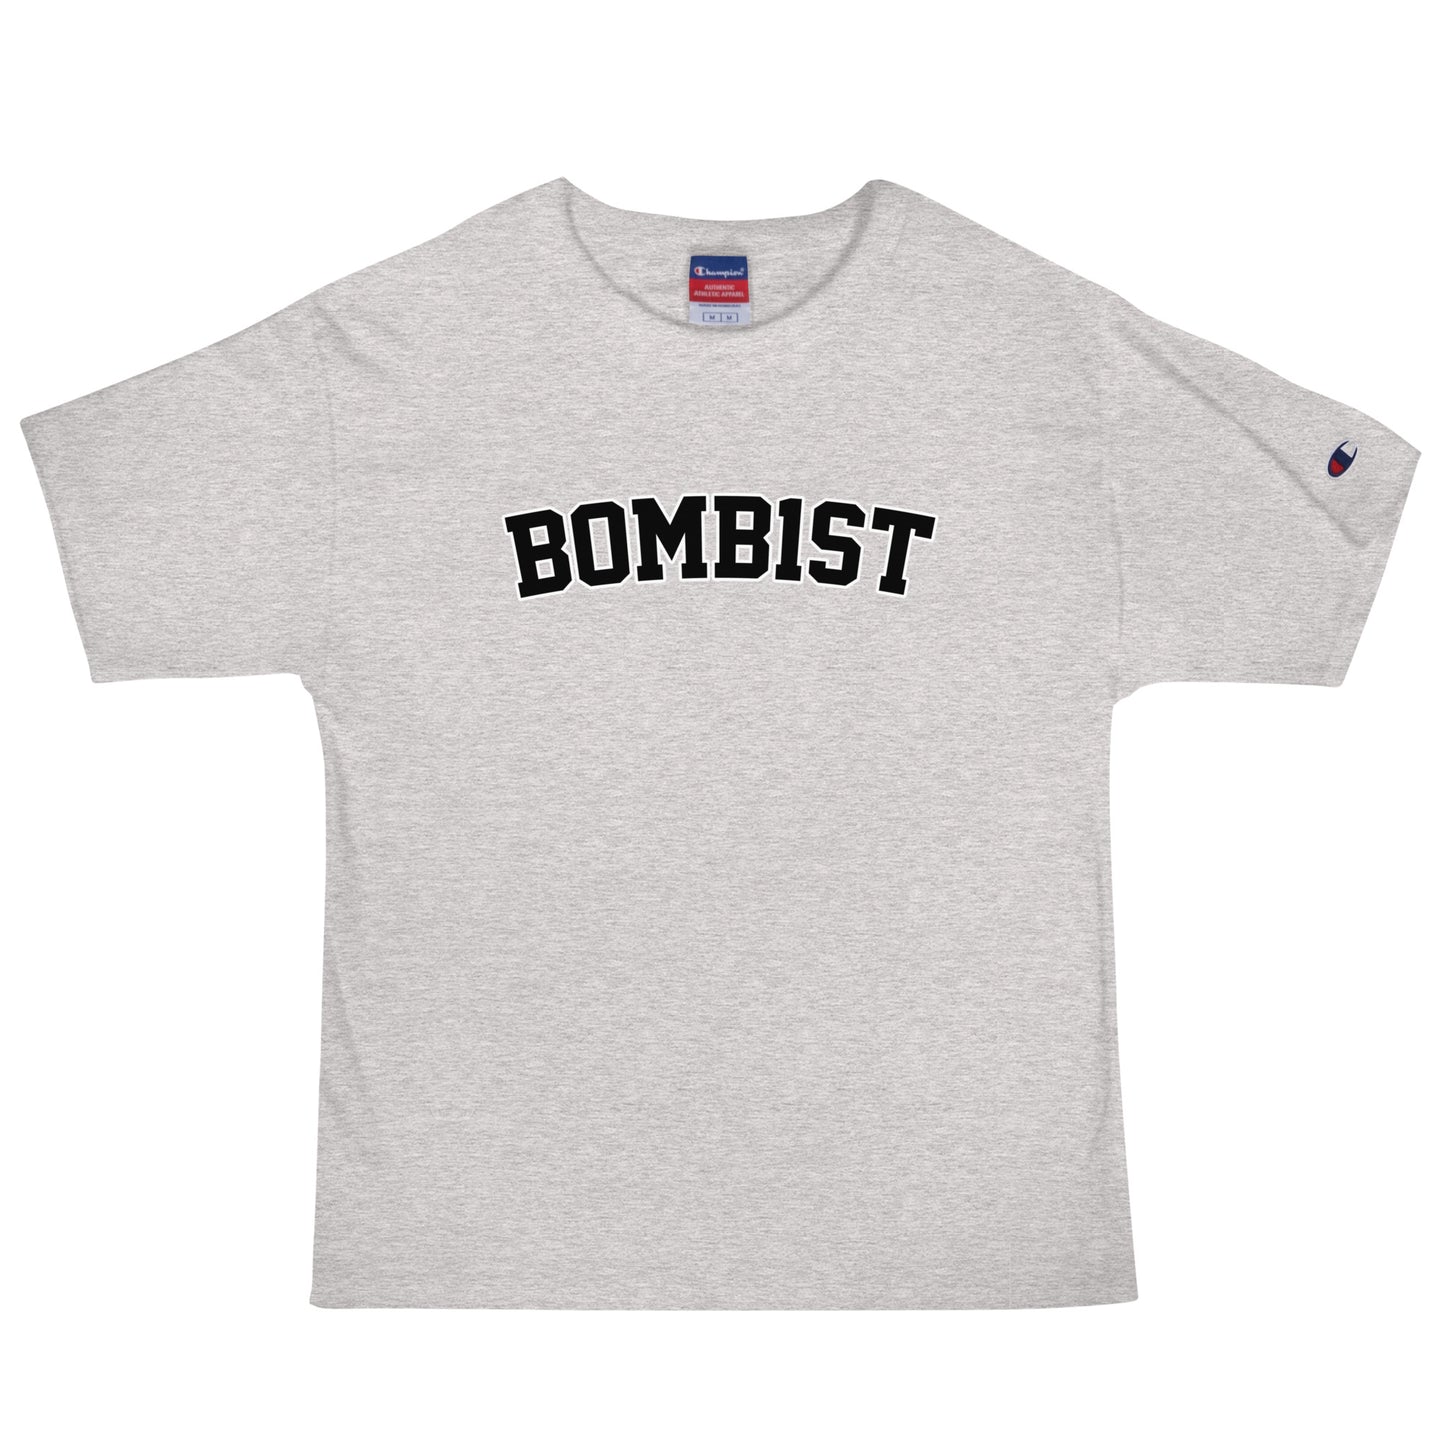 Bomb1st x Champion T-Shirt